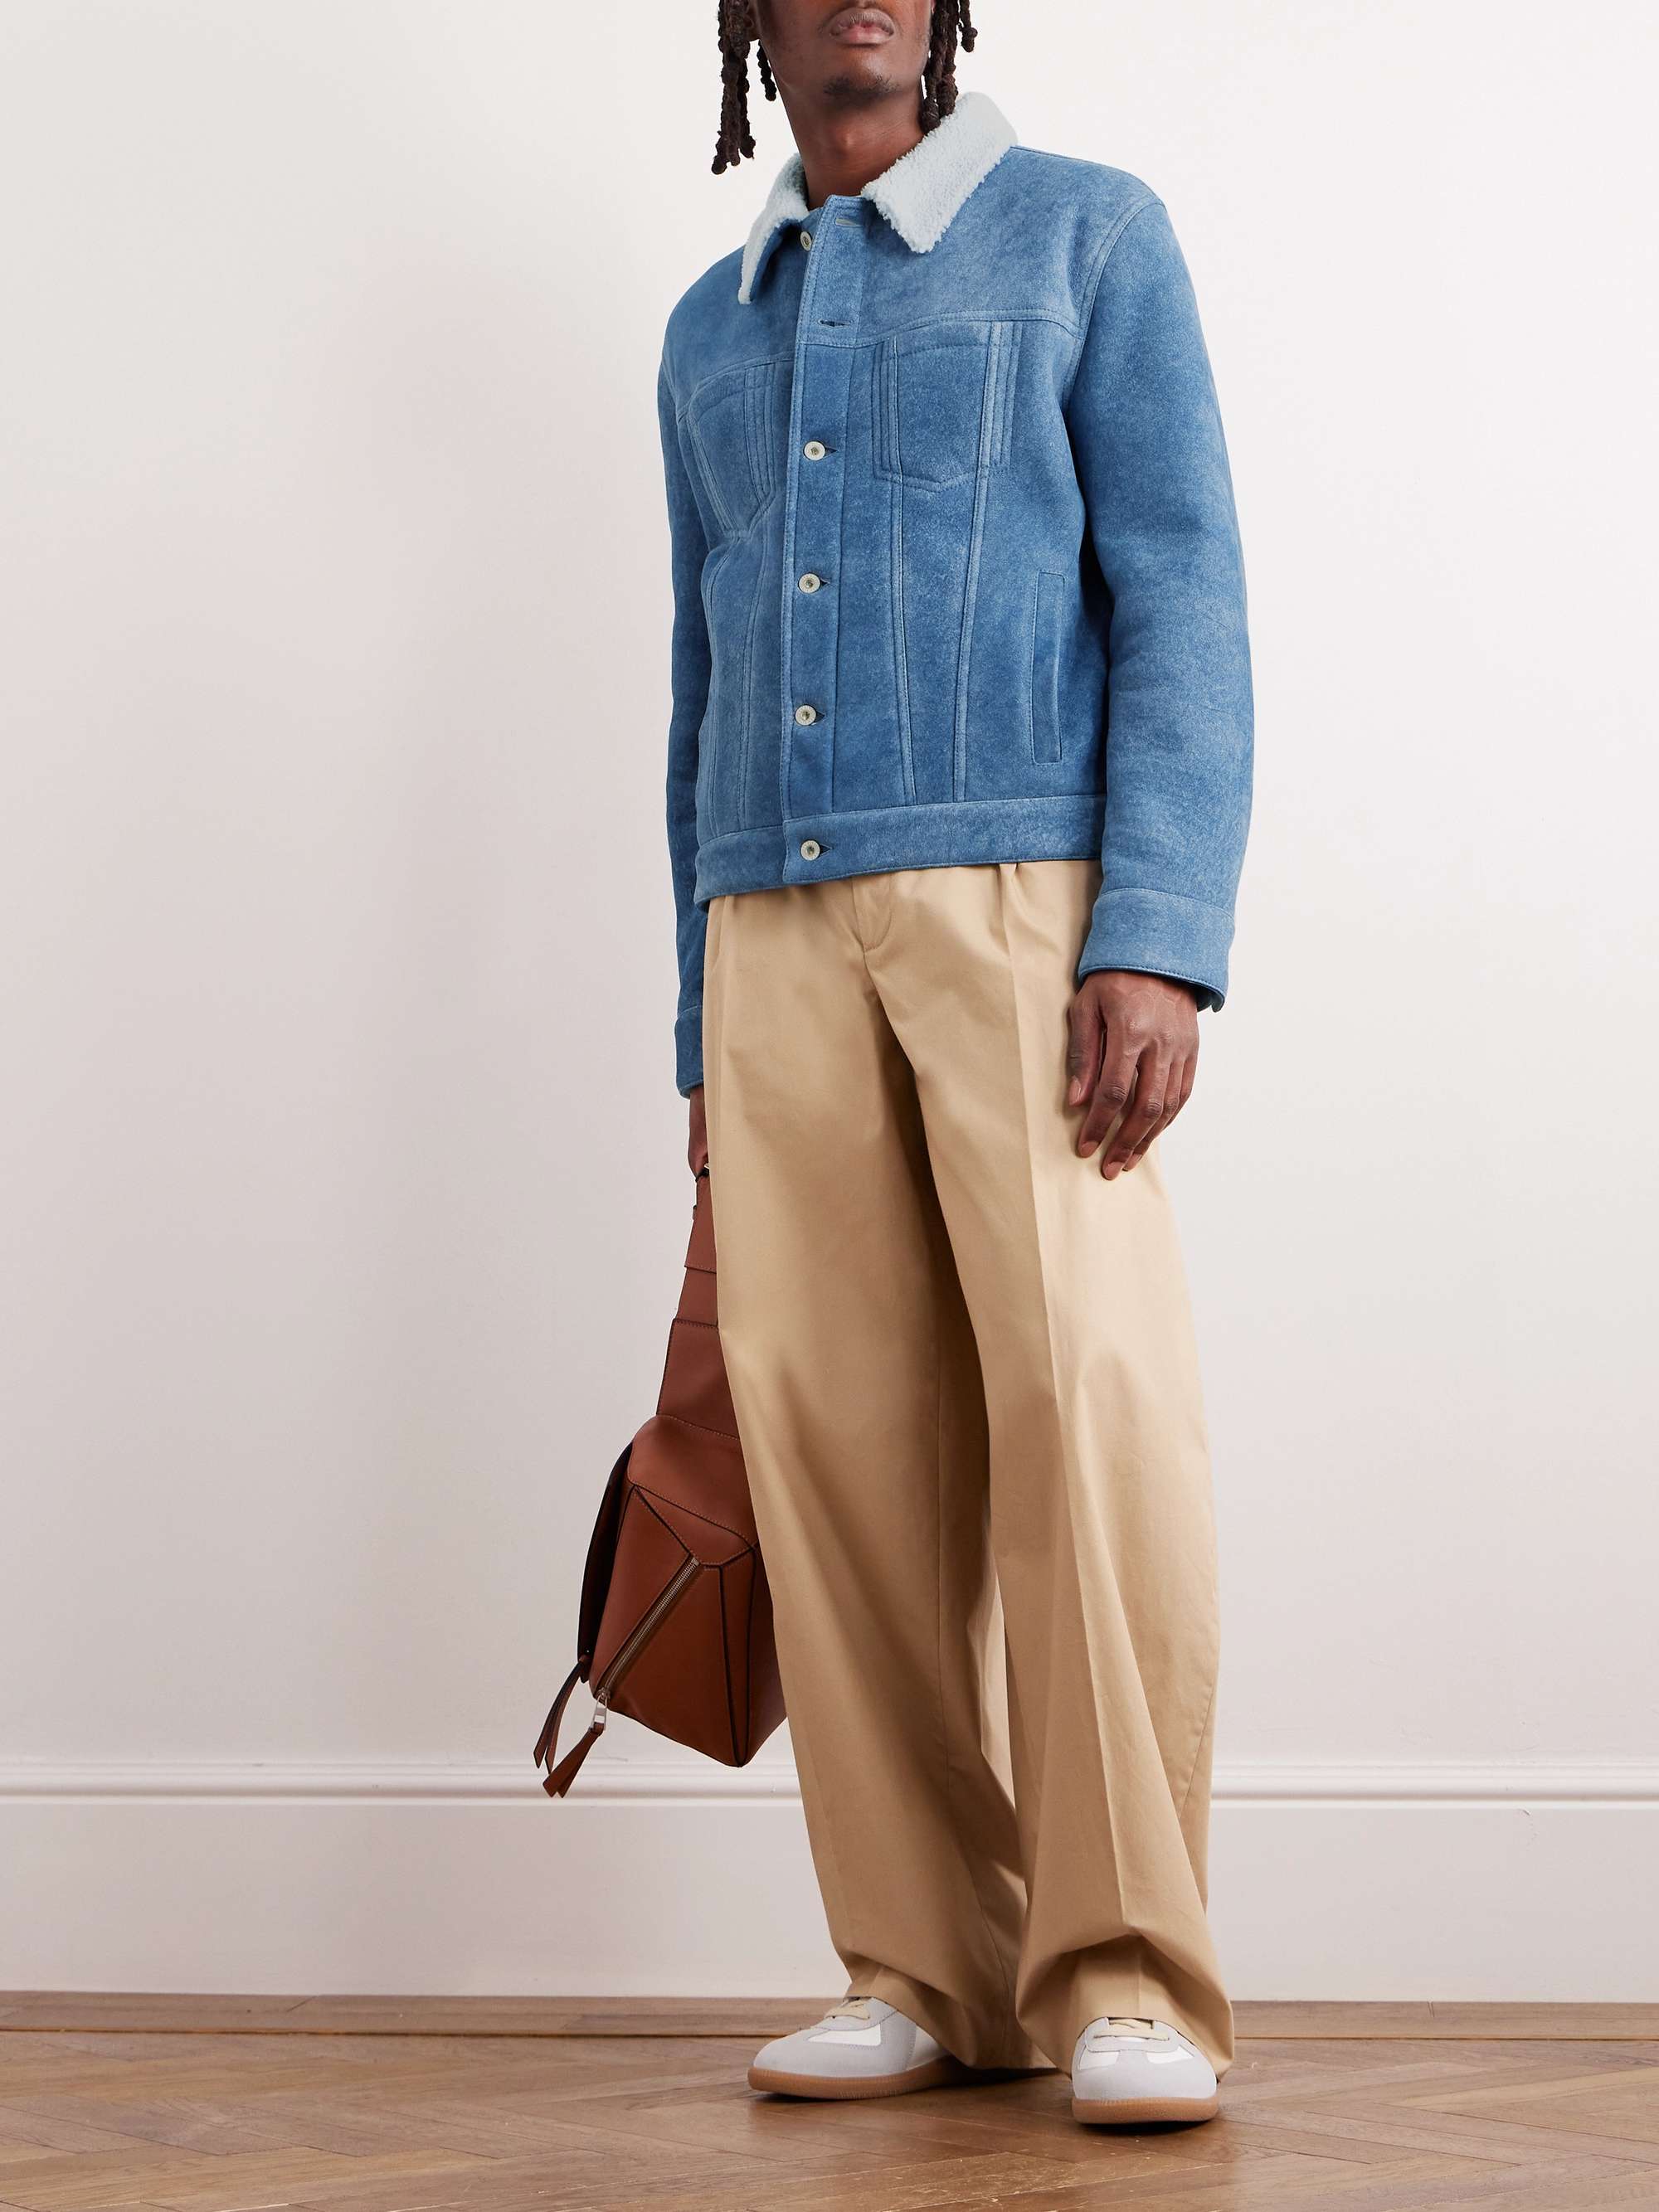 LOEWE Shearling Jacket for Men | MR PORTER